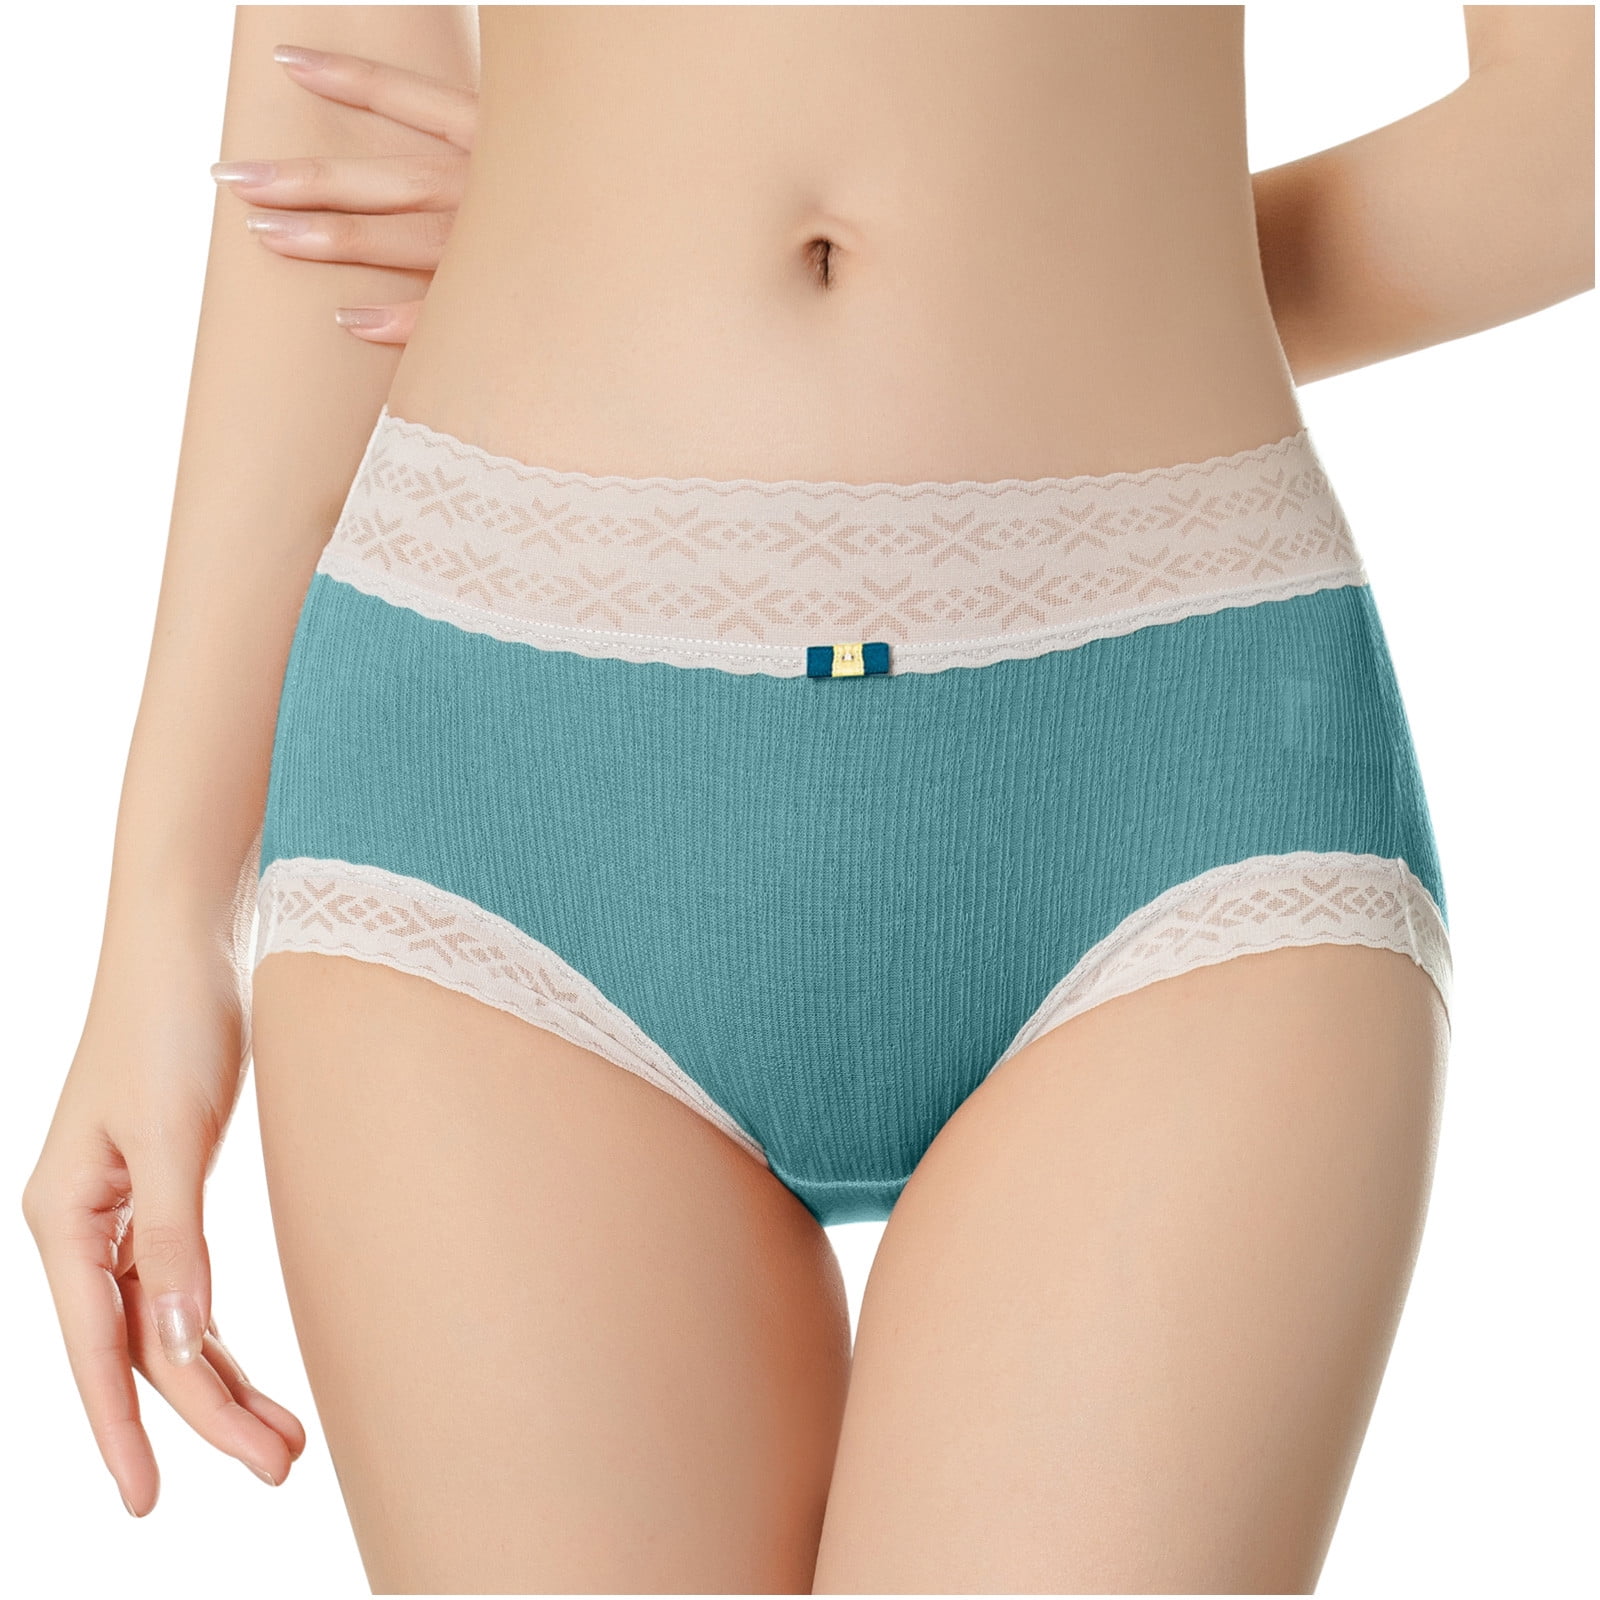 Hesxuno Little Girls Underwear Mid-Waist Cotton Girl Underwear Cotton  Comfortable Soft Briefs Contrast Color